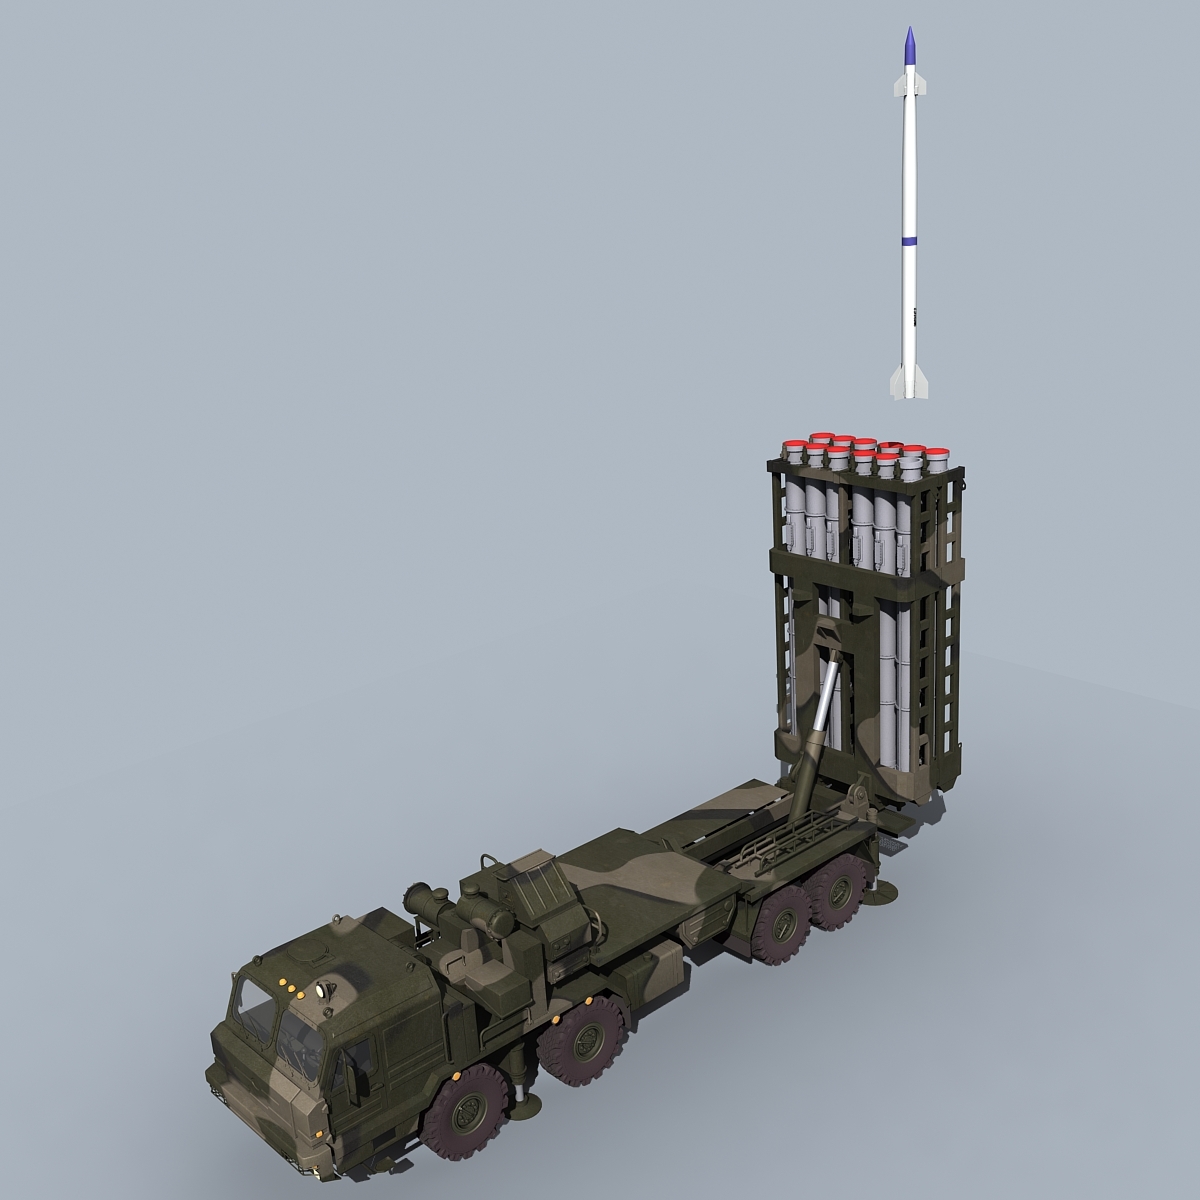 مدل سه بعدی تجهیزات نظامی و جنگی روسی - 6